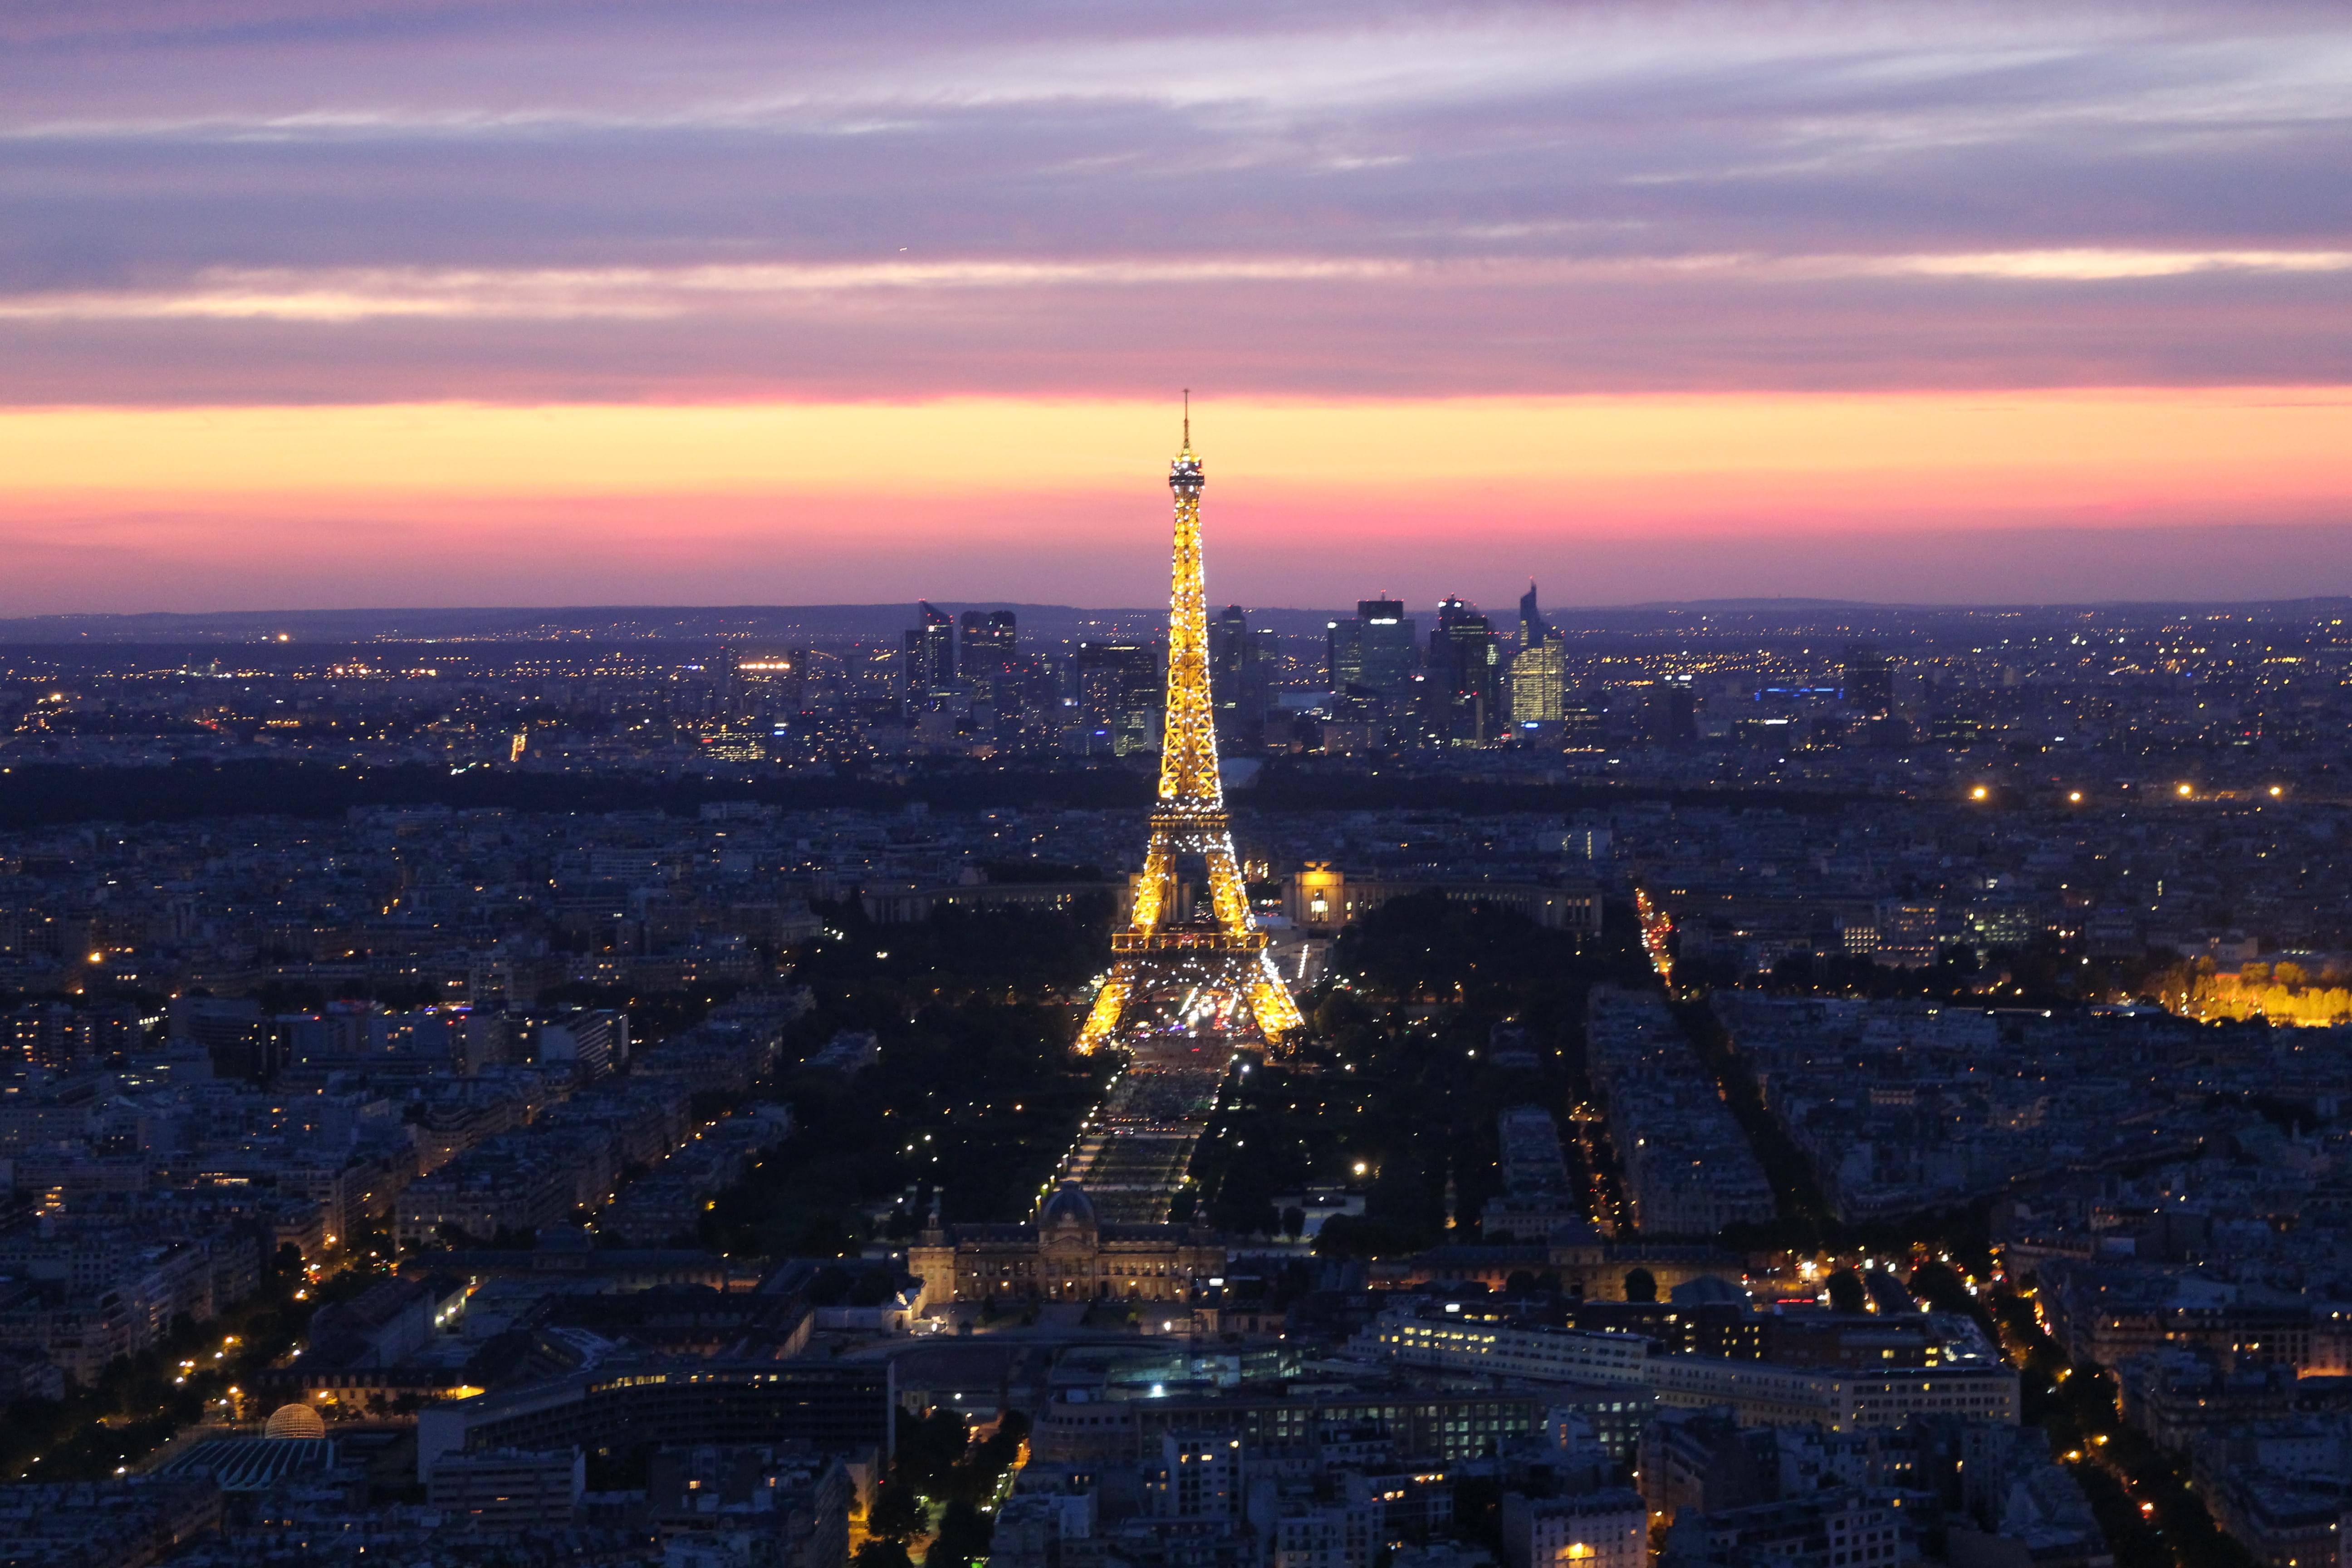 Best Views Of Eiffel Tower In Paris